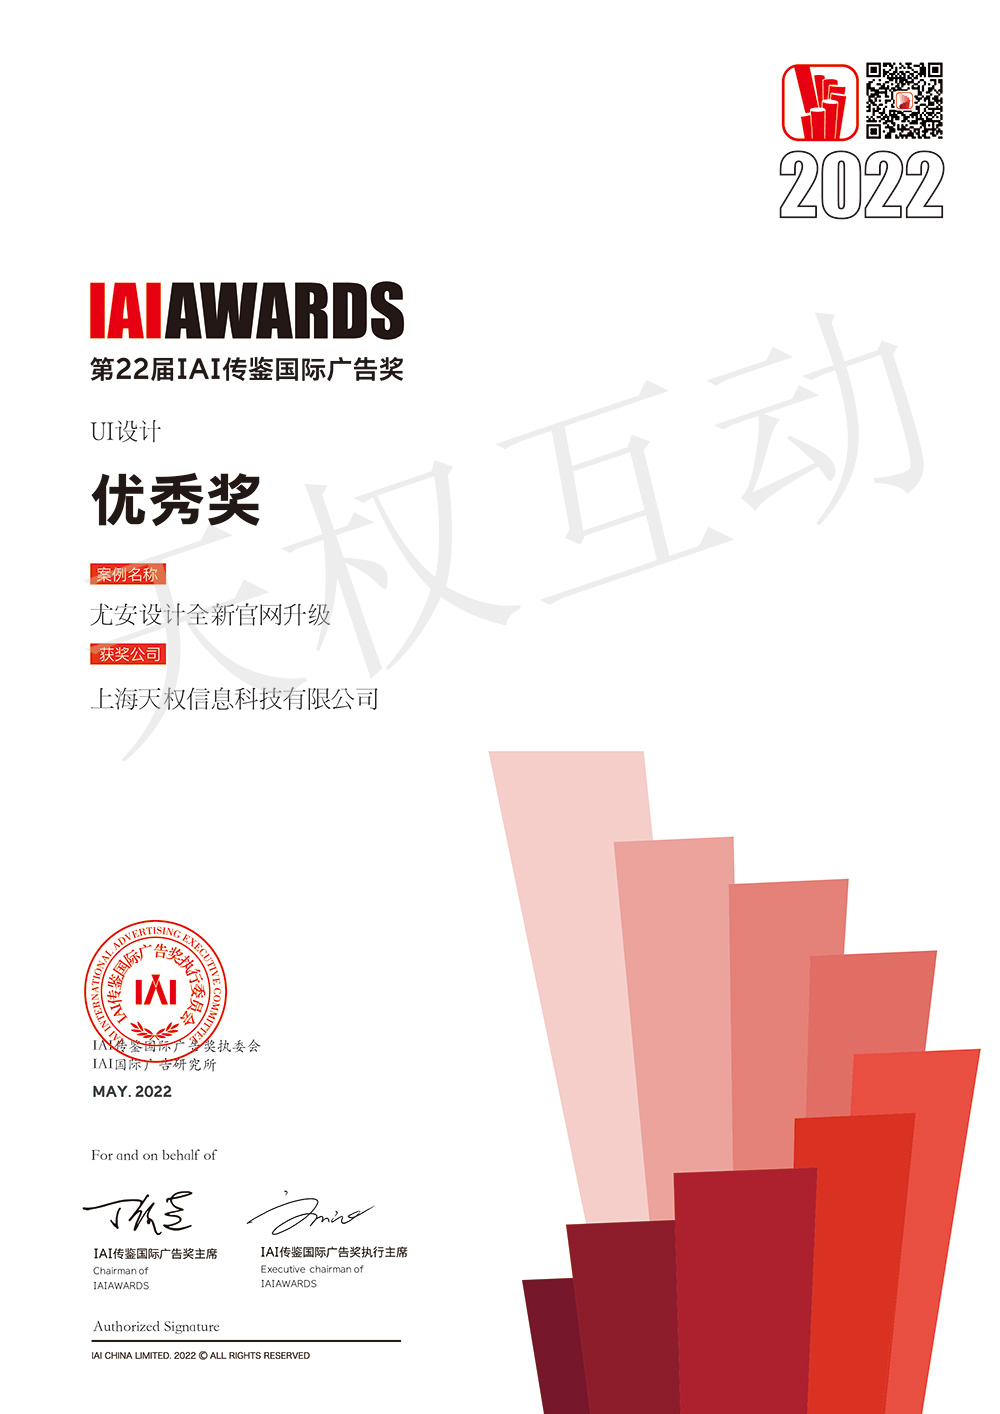 恭喜彩投网app(中国)有限责任公司荣获第22届IAIAWARDS国际广告奖